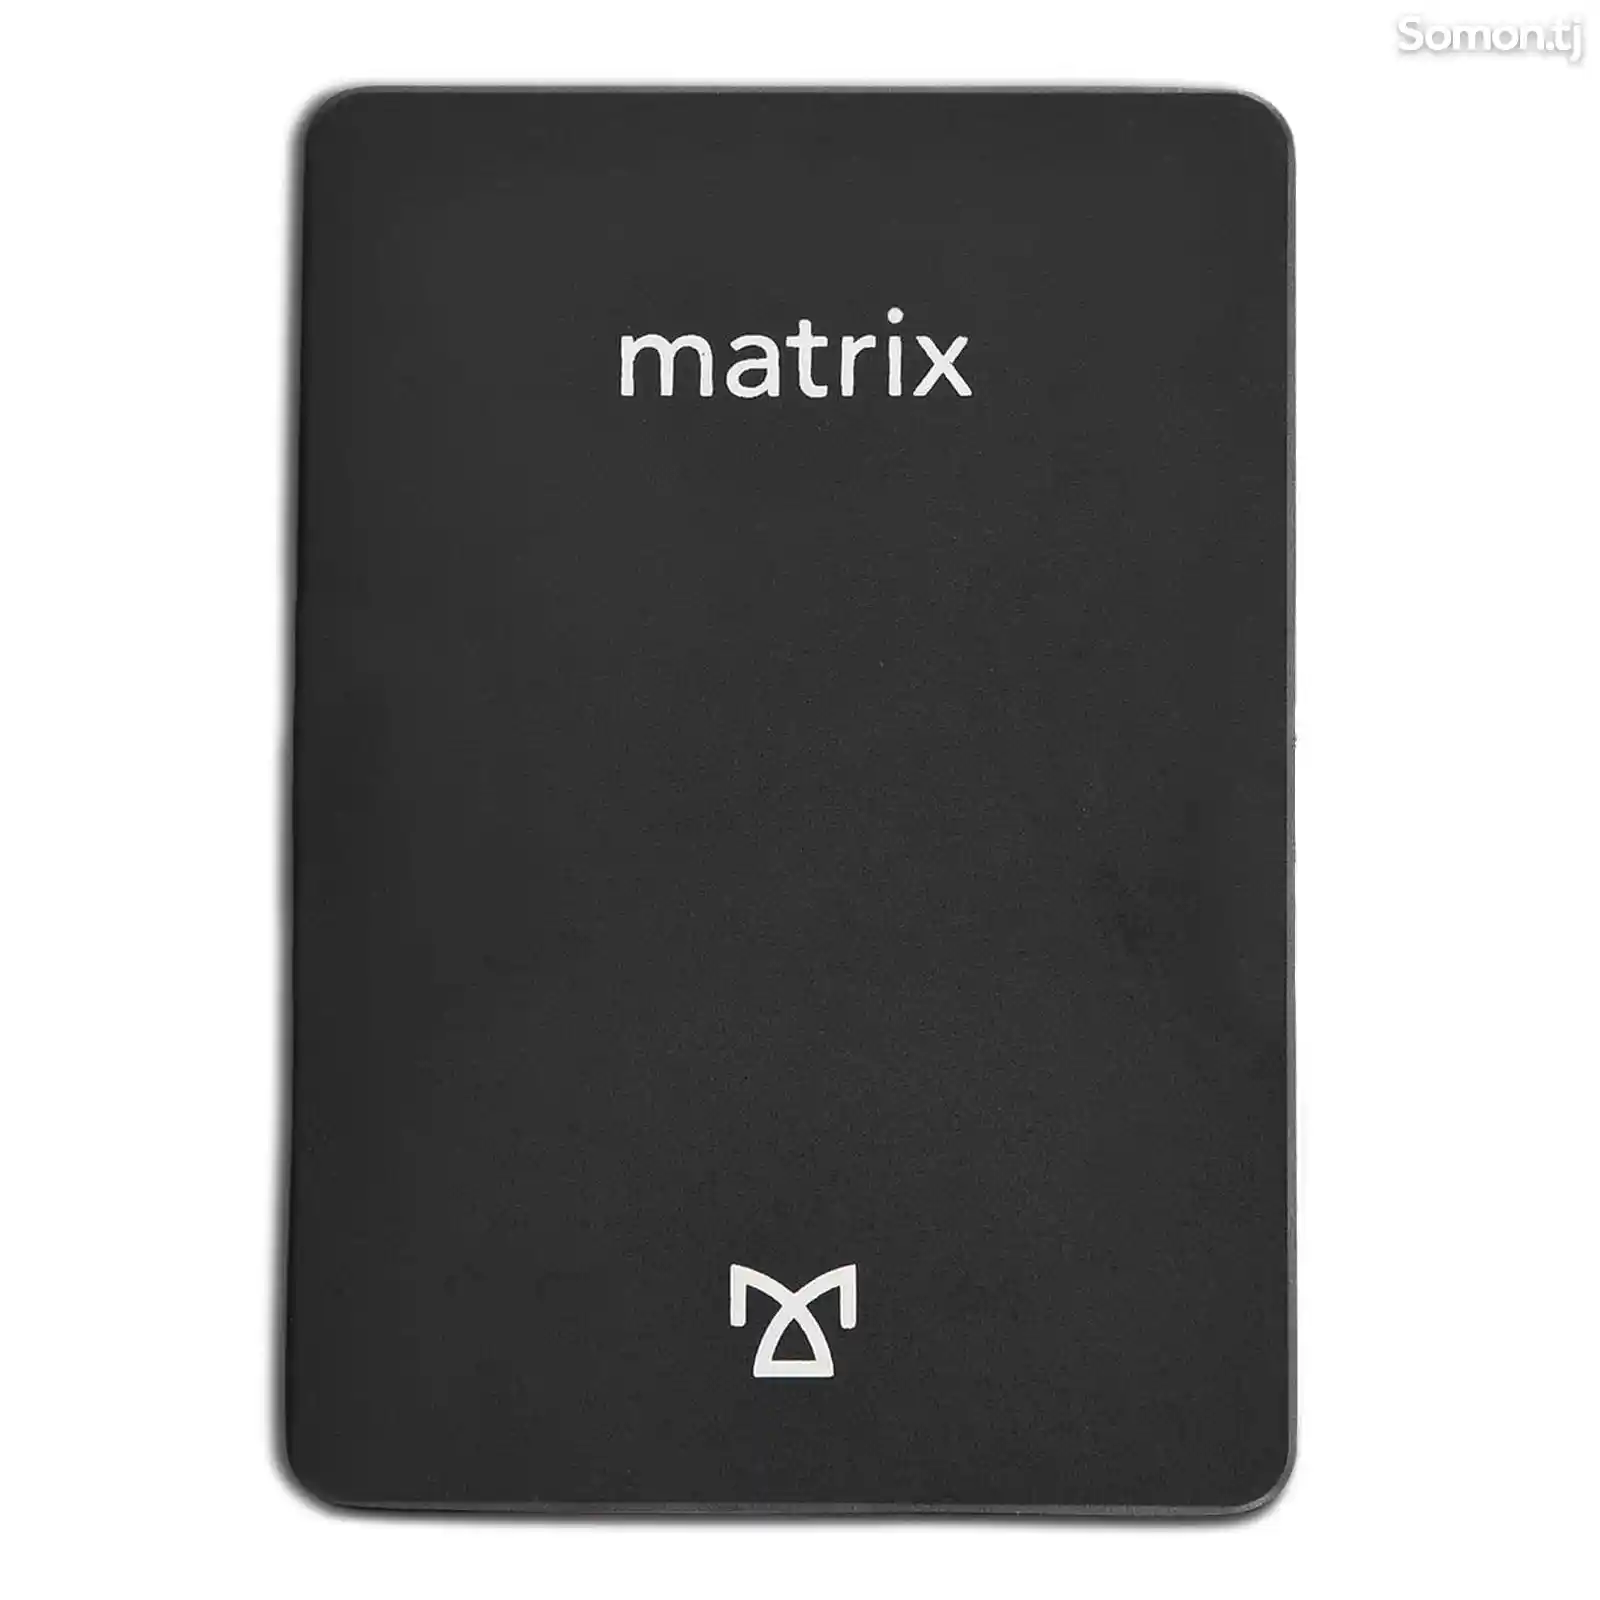 SSD Matrix 512GB 3D Nand Flash-2